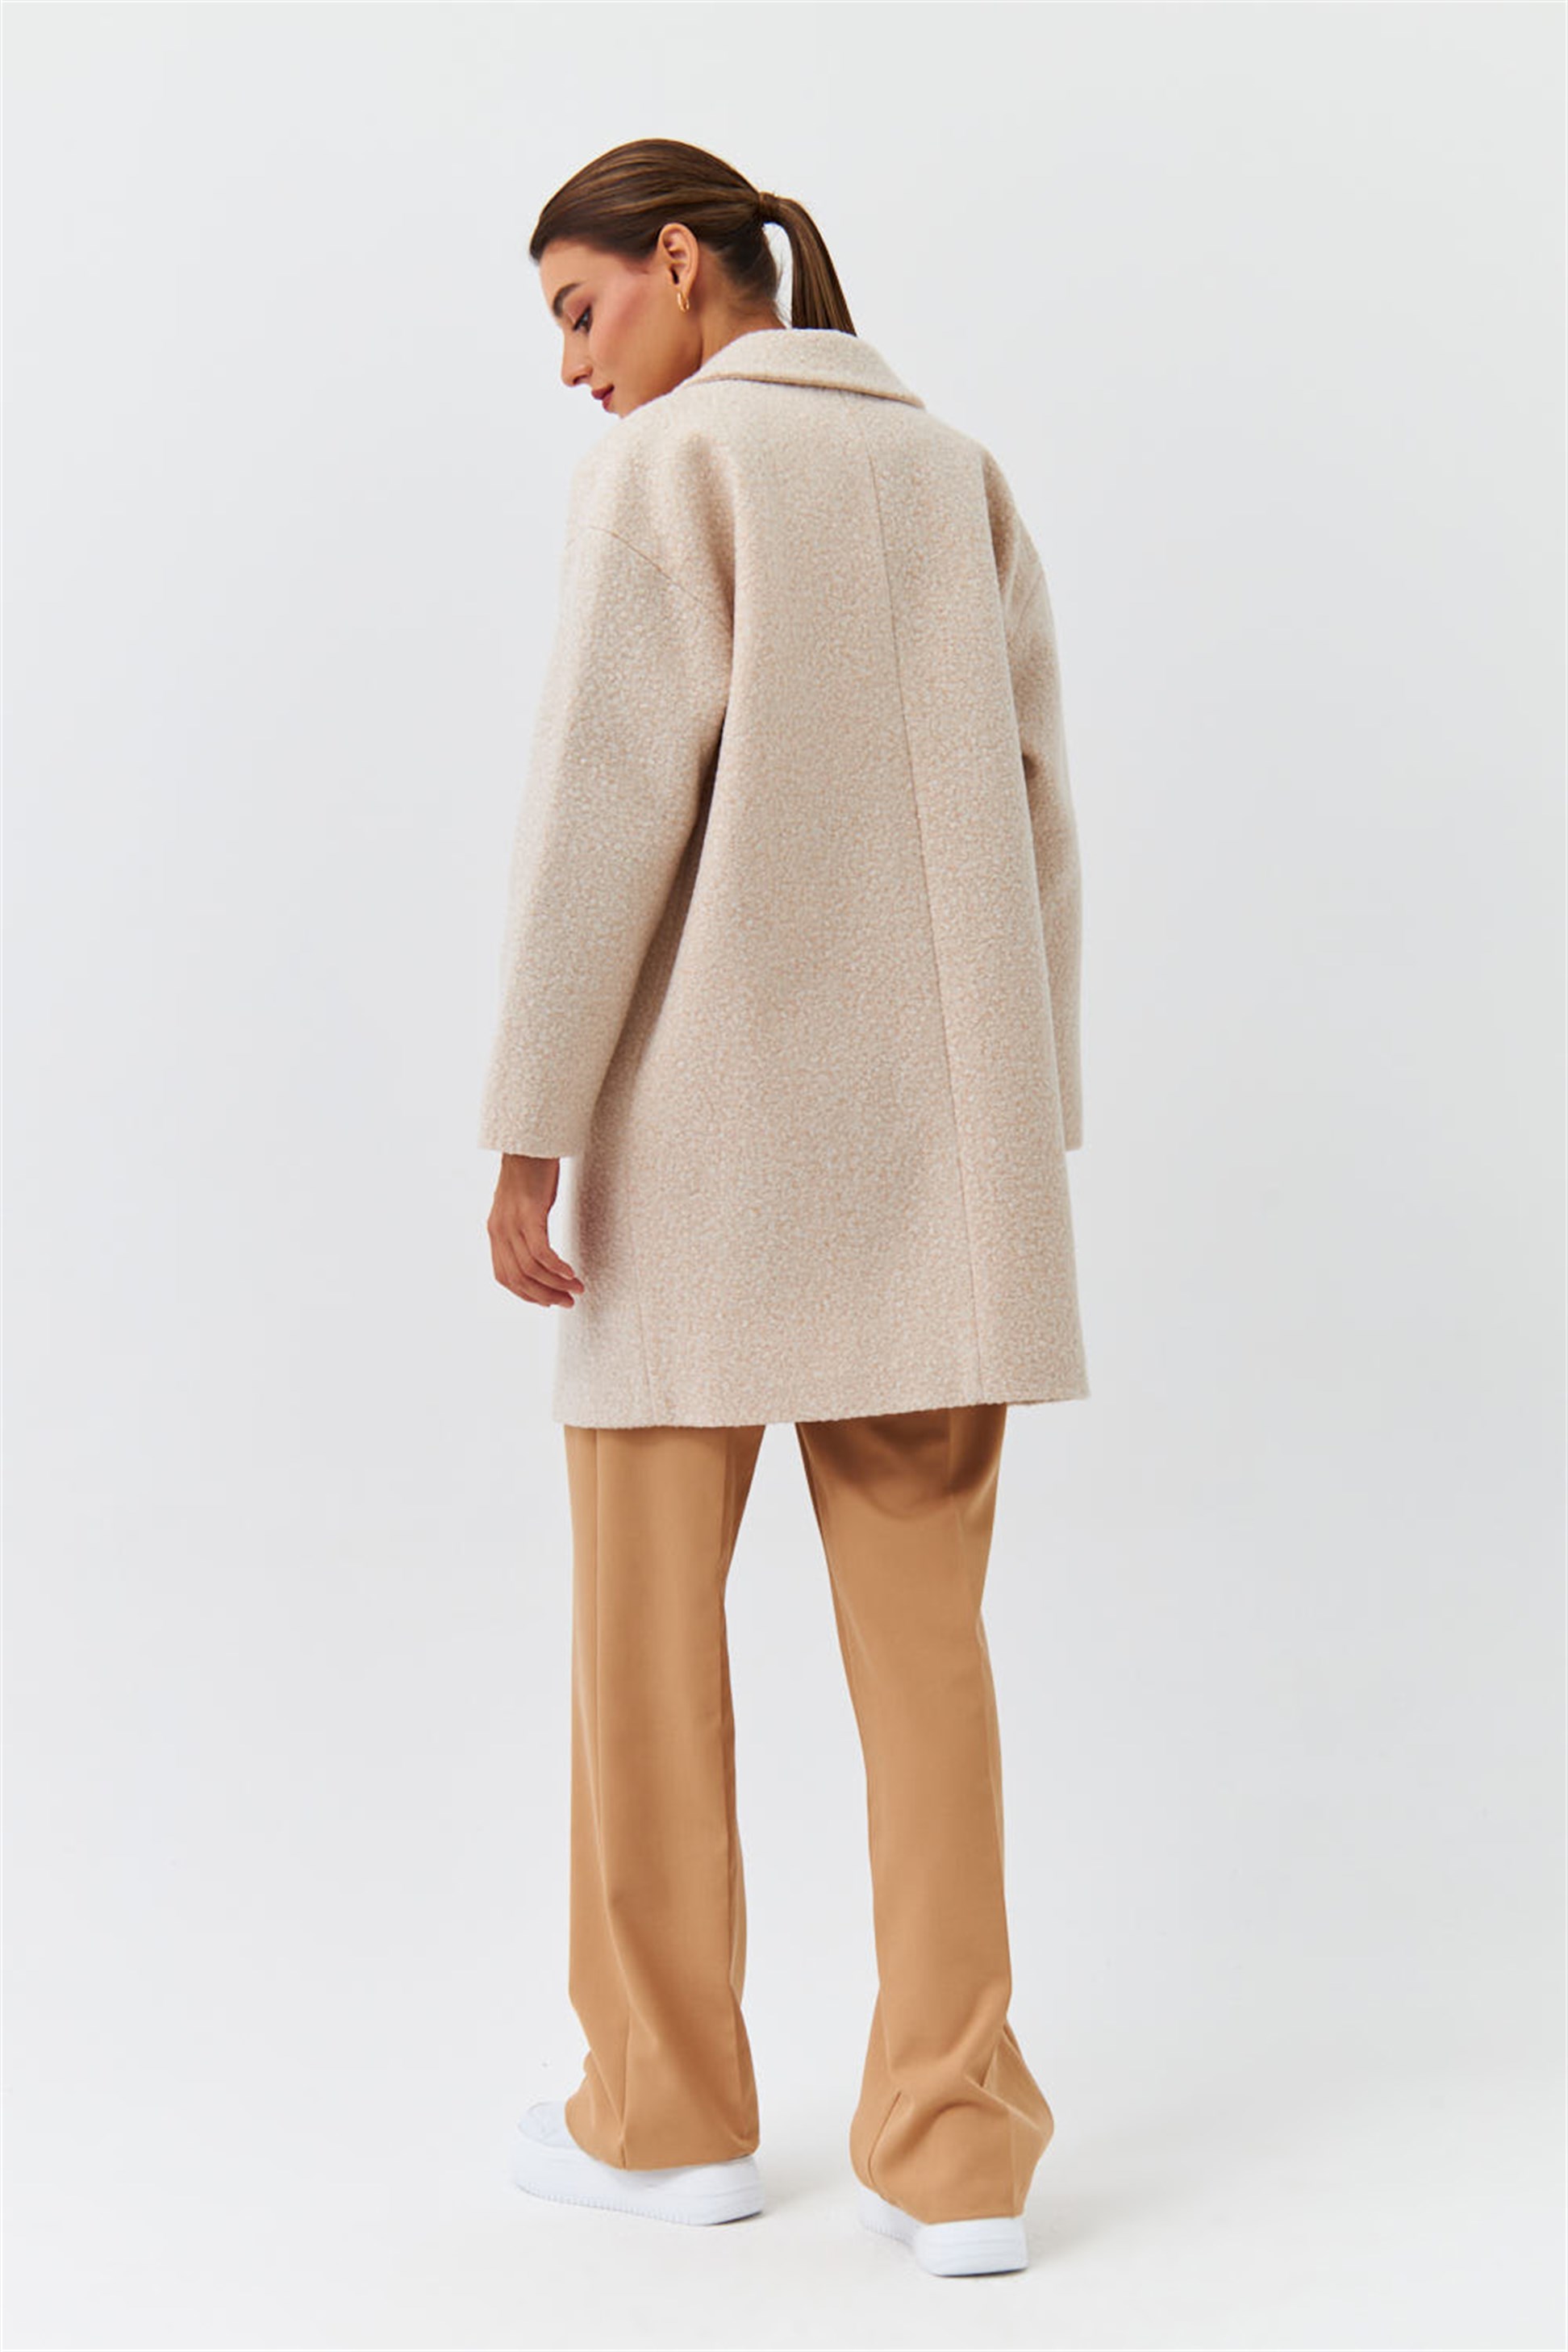 WOMEN FASHION Coats Shearling Beige 46                  EU discount 64% NoName Long coat 